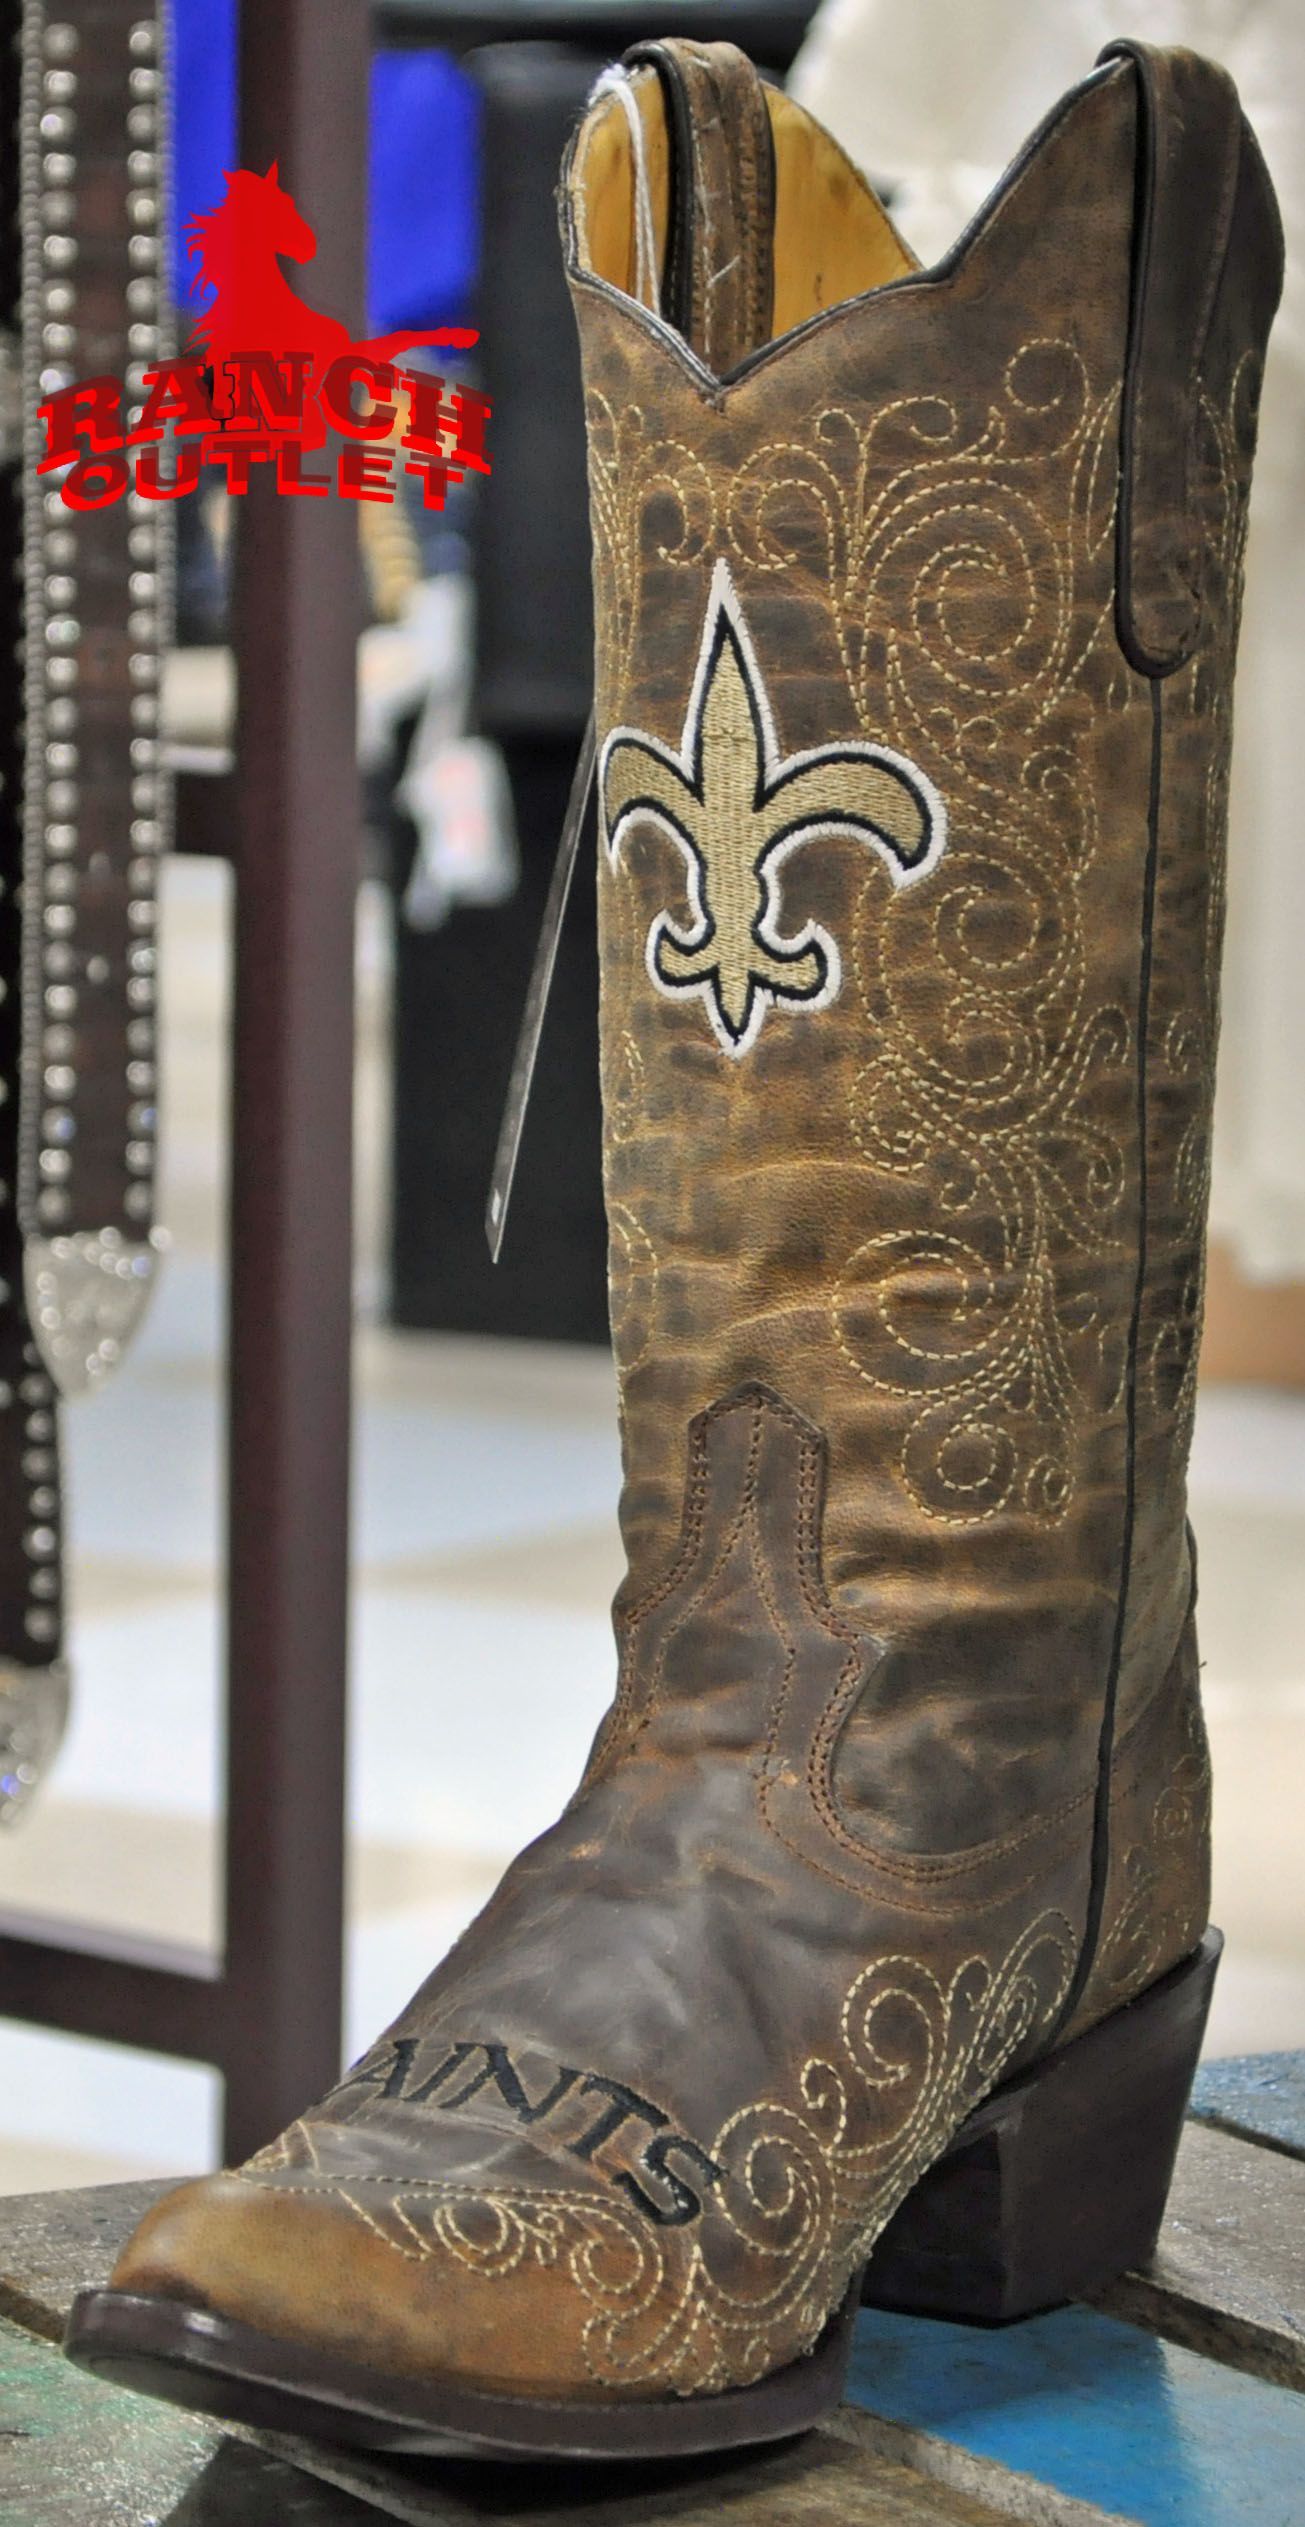 New Orleans Saints Cowboy boots